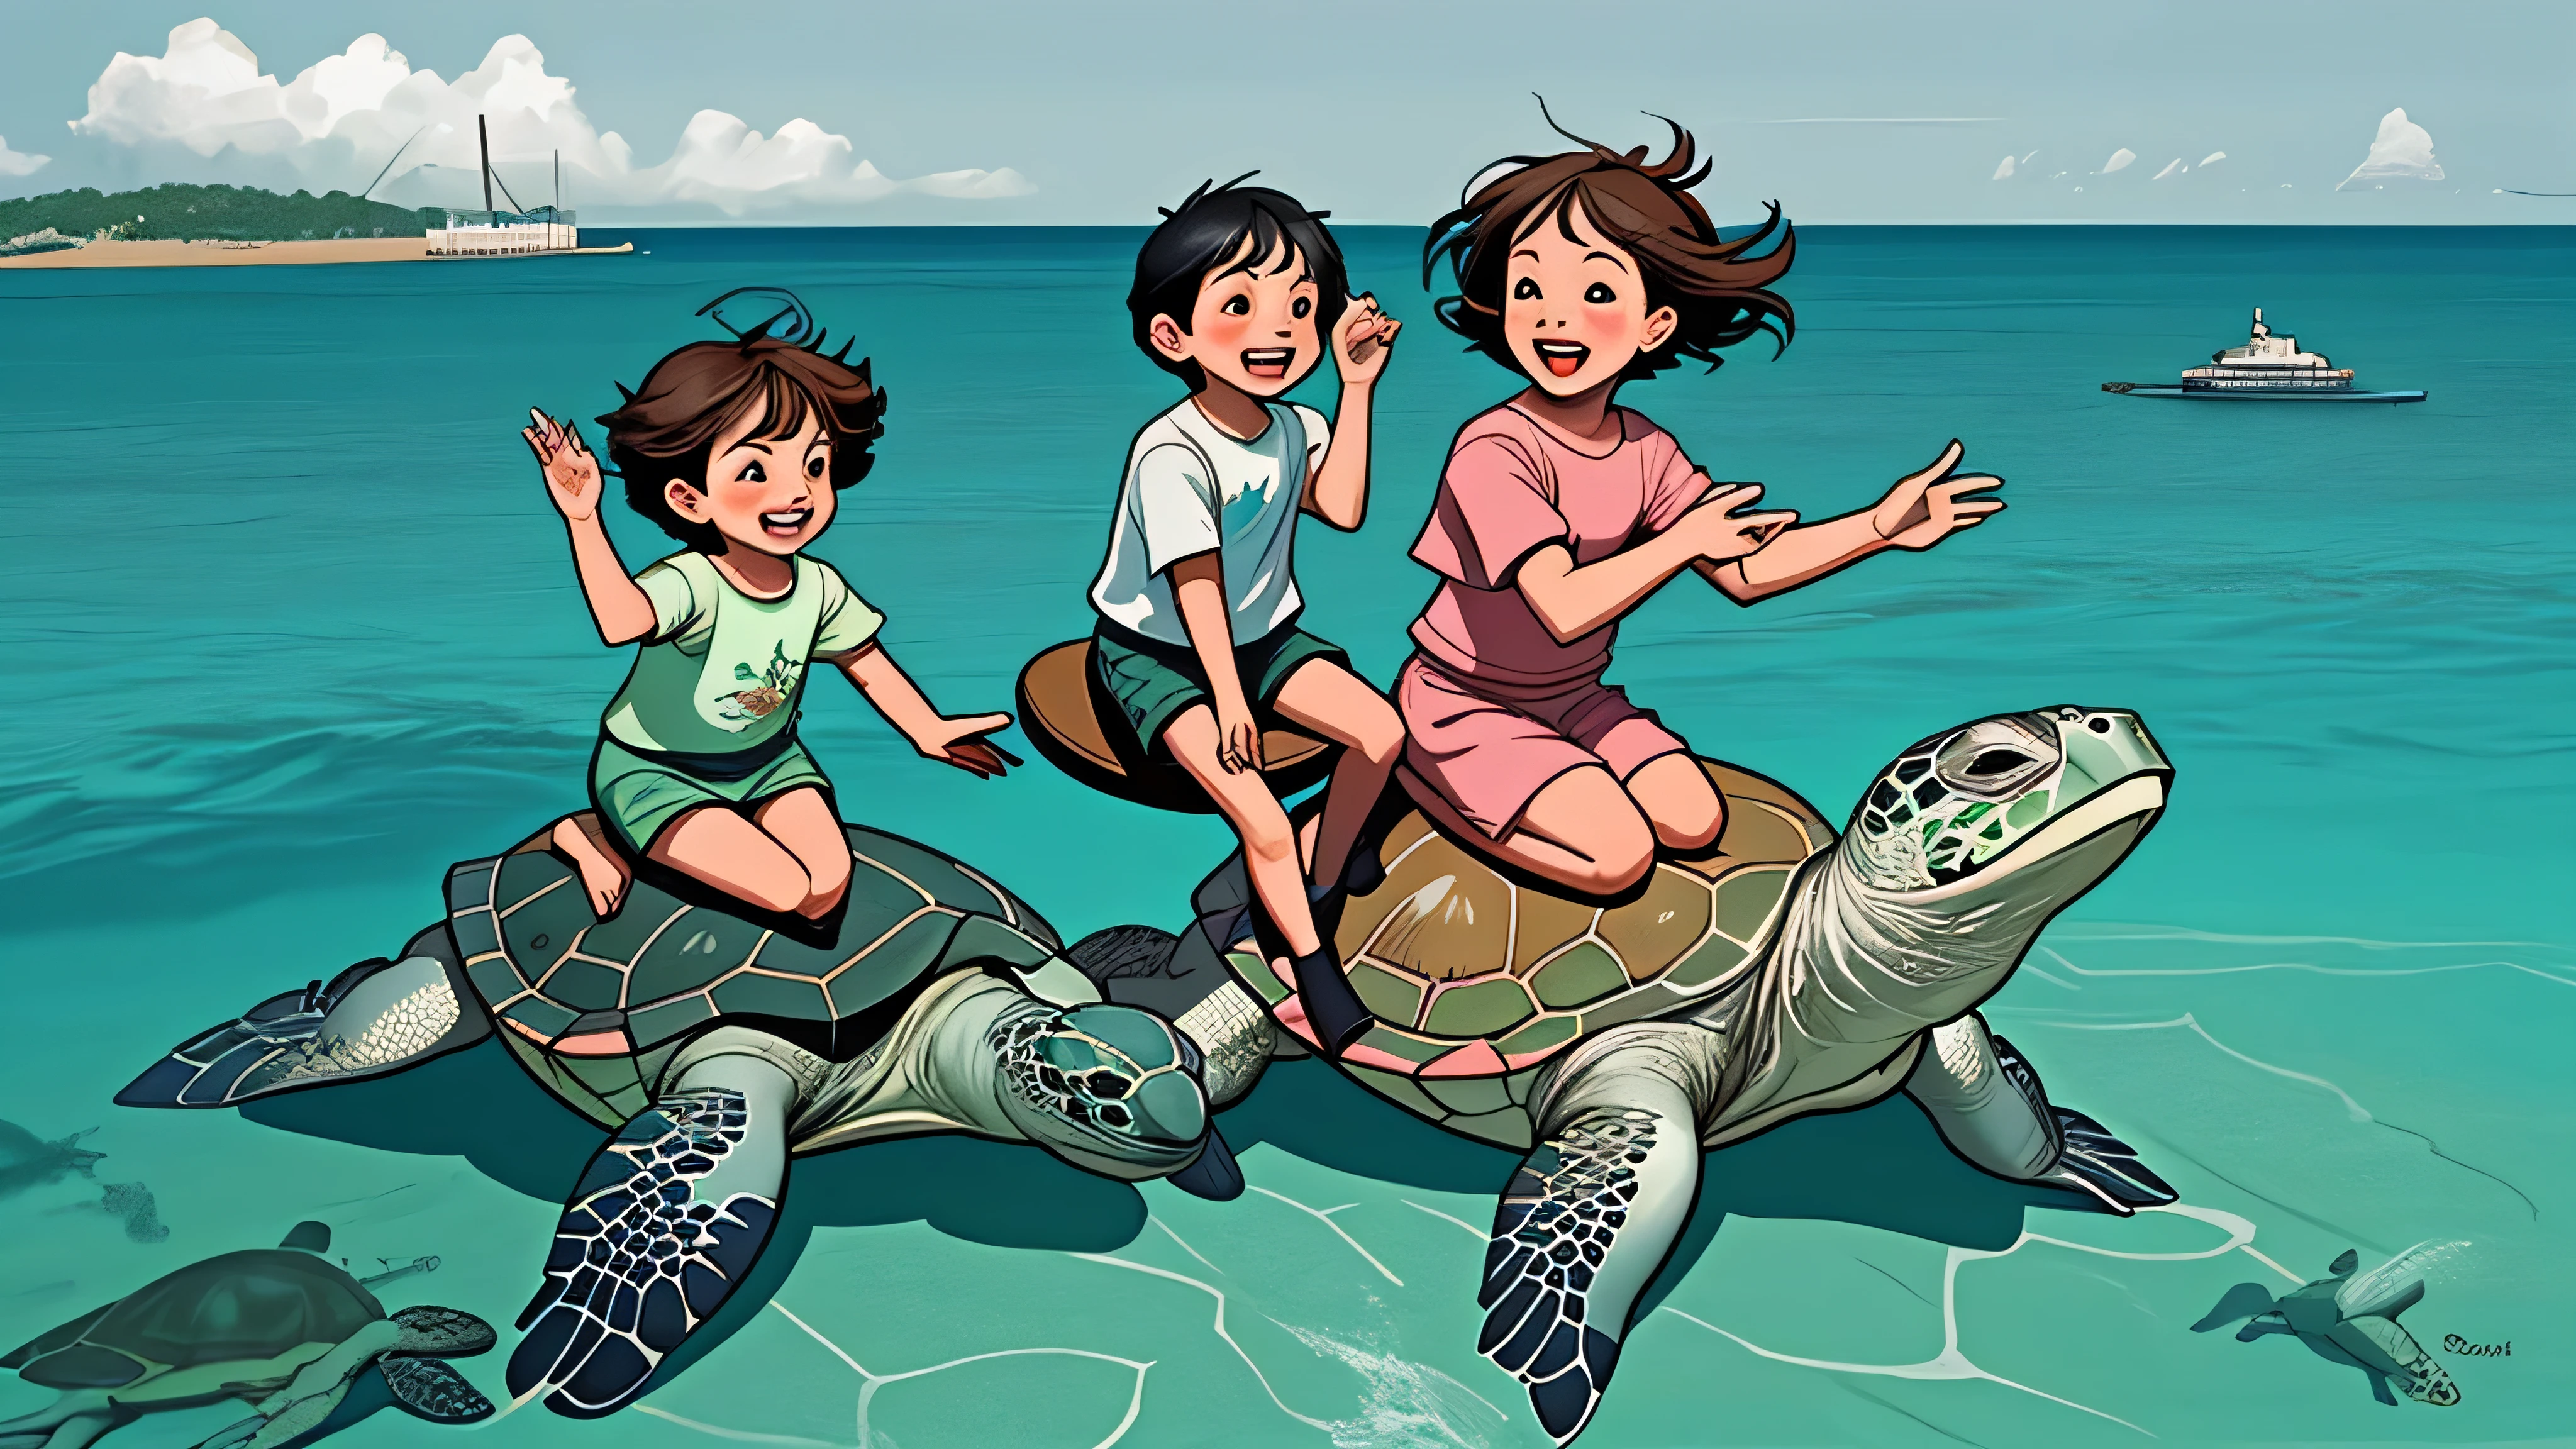 Glückliche Kinder reiten auf echten Meeresschildkröten im Meer. Kinder&#39;s Illustrationsstil, Minimalismus